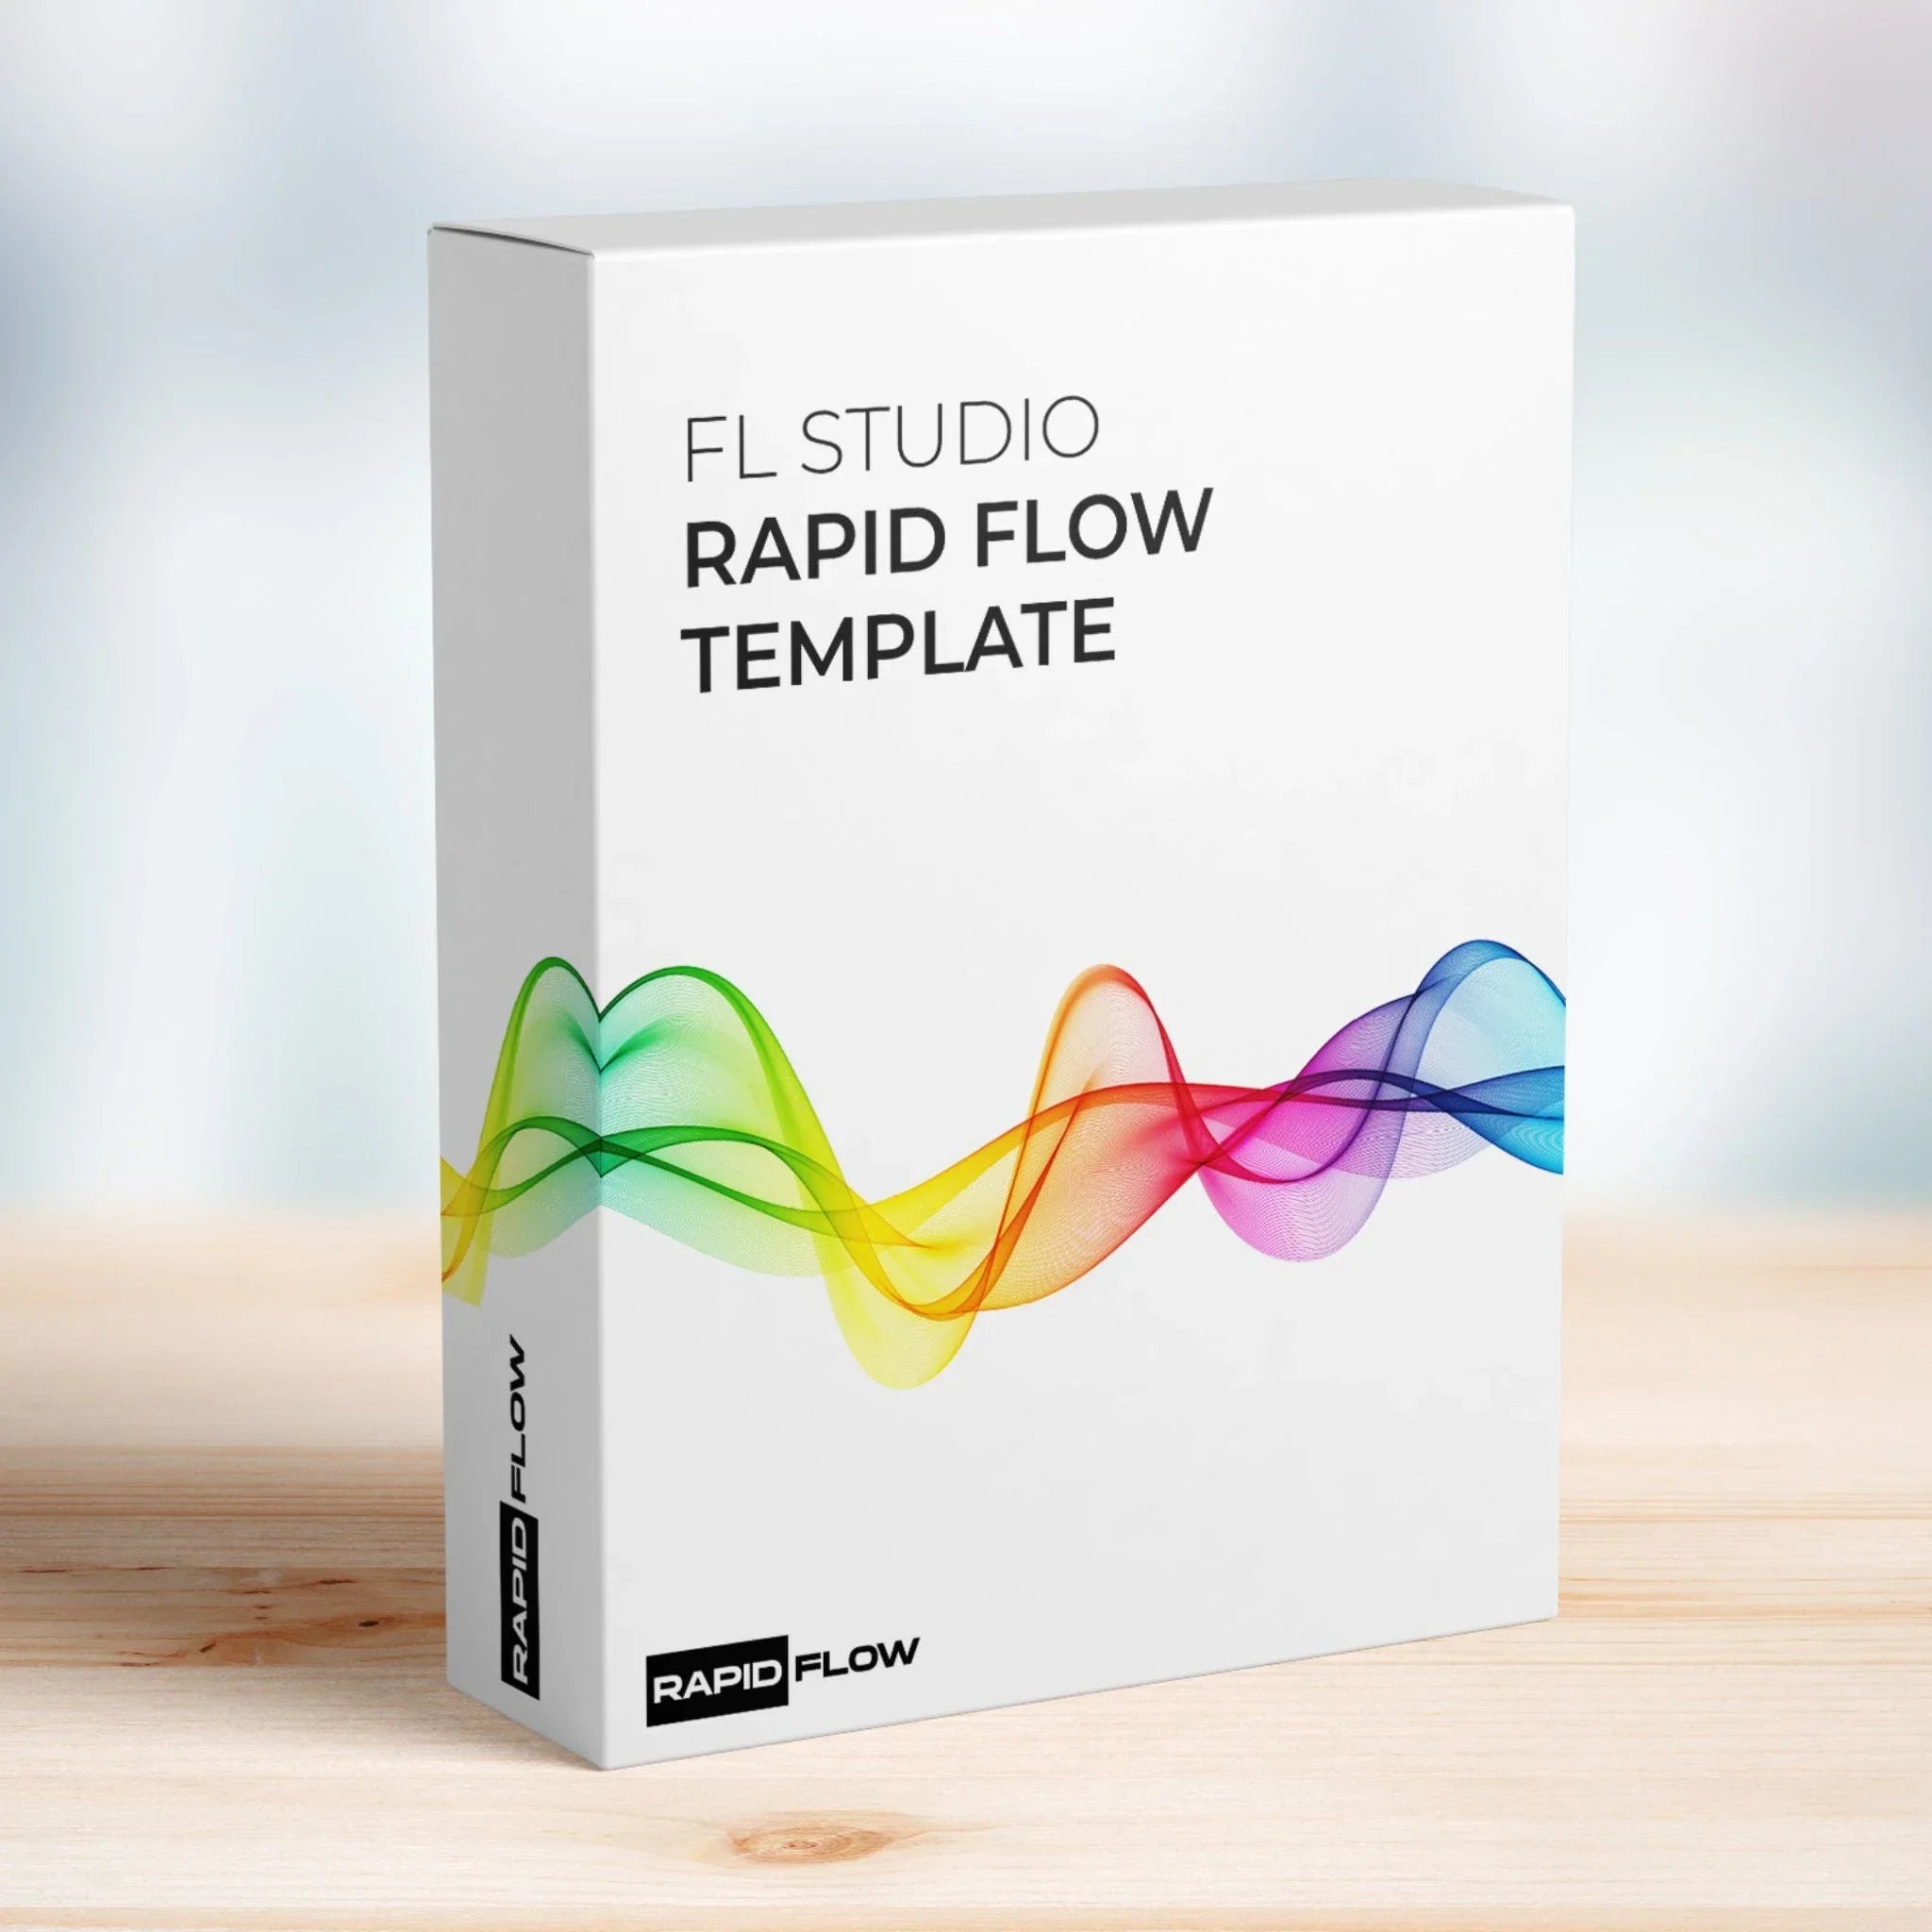 FL Studio Rapid Flow Template